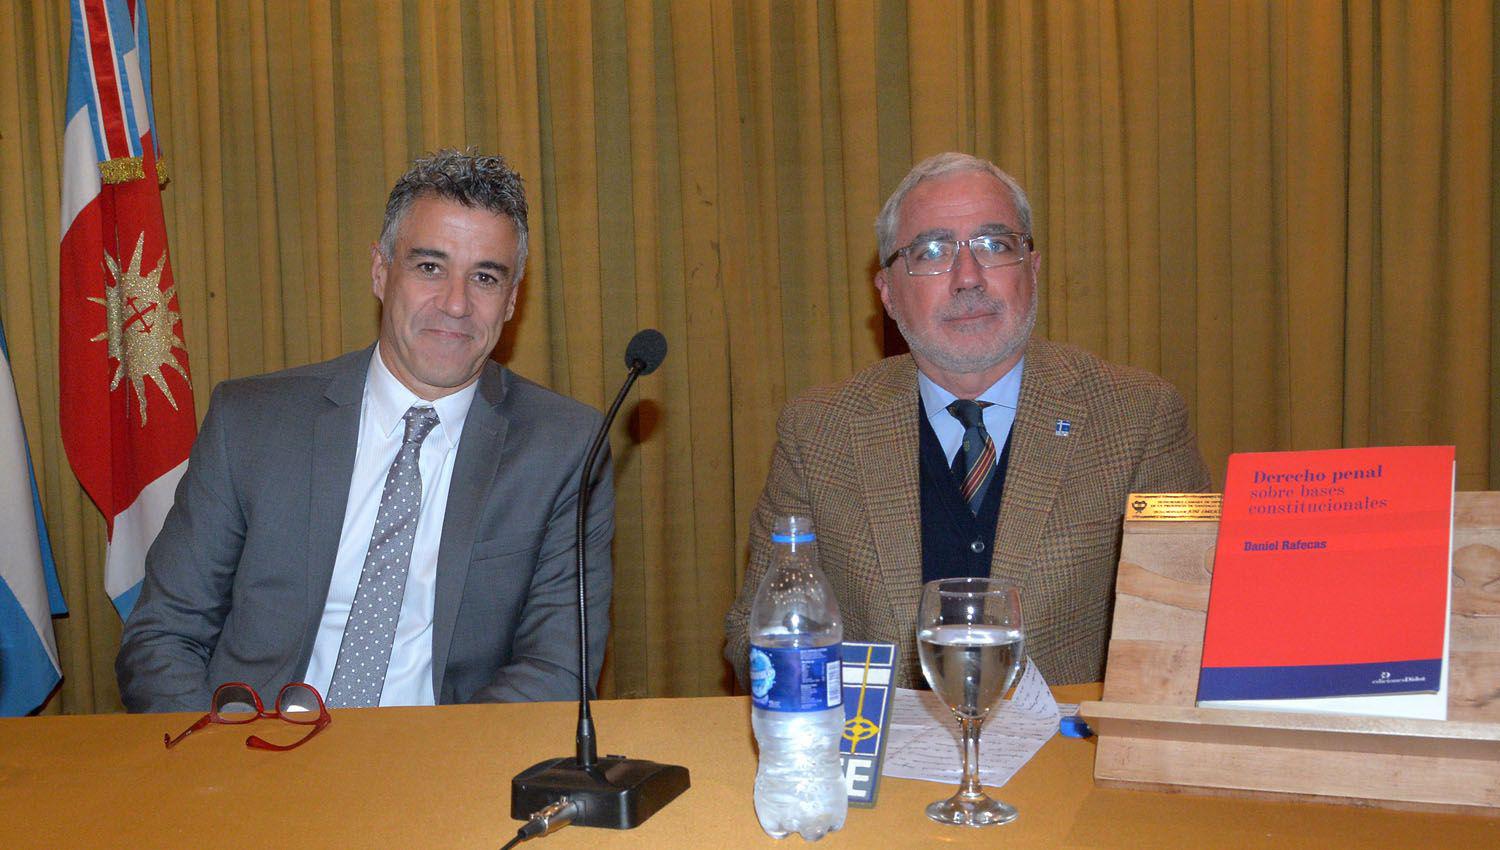 El Dr Daniel Rafecas presentoacute su libro en el auditorio de la Ucse